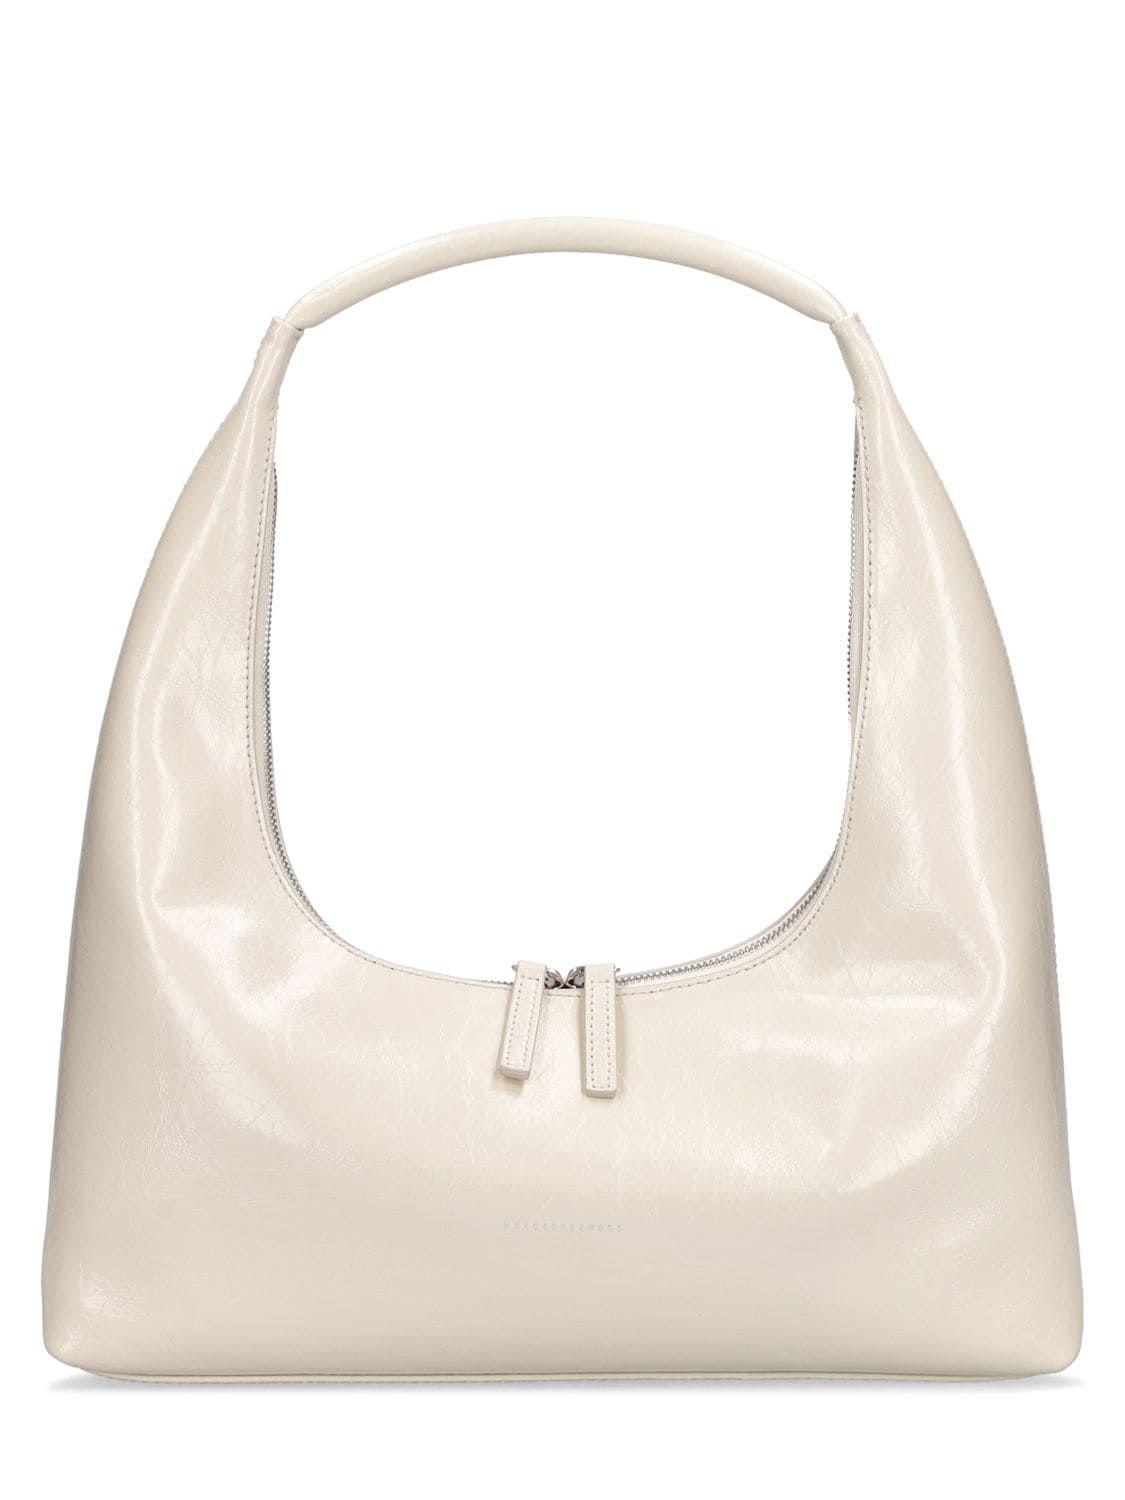 Marge Sherwood Hobo Mini Crinkled Leather Shoulder Bag for Women